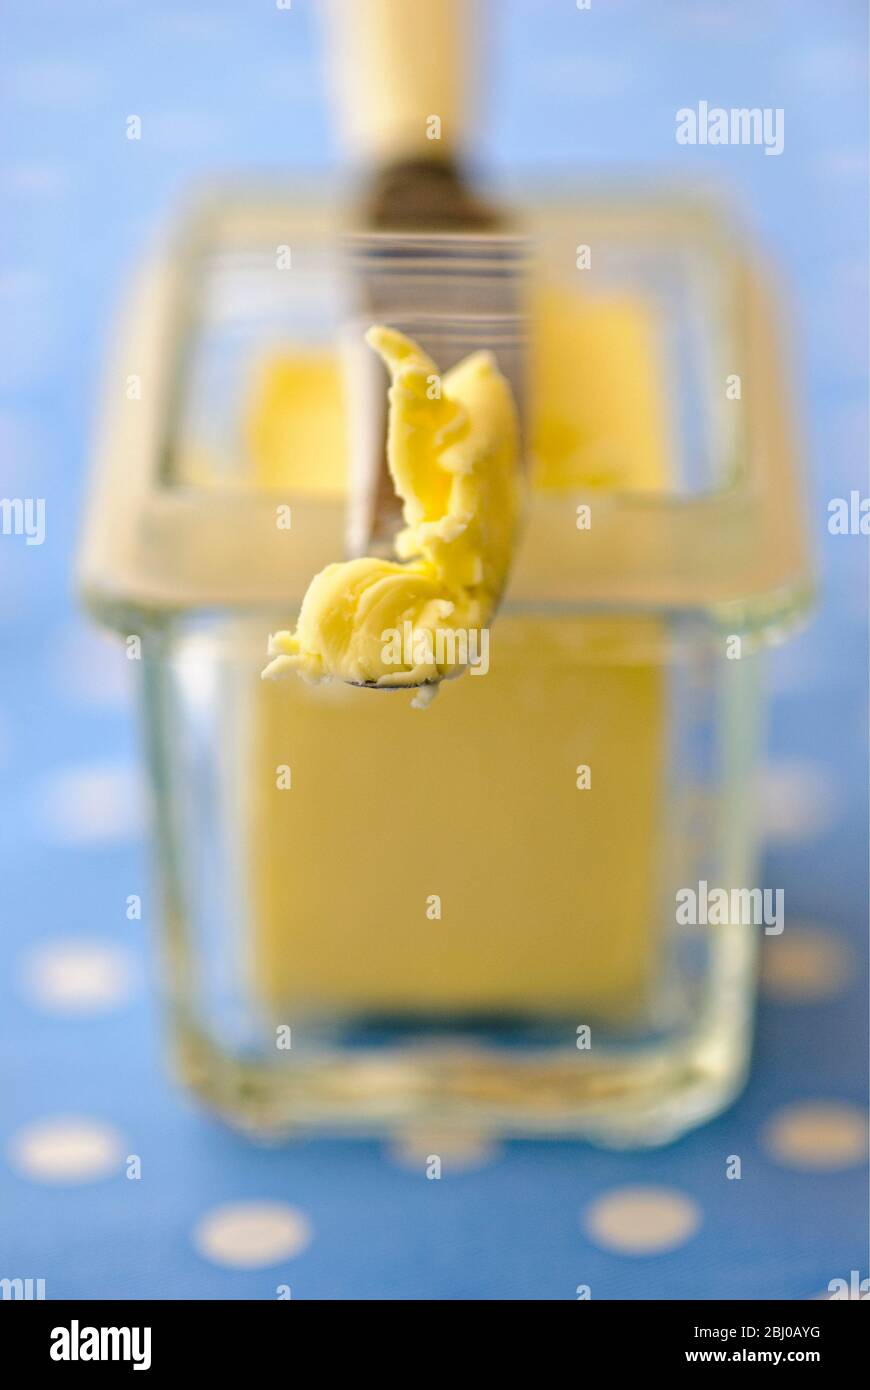 Butterdose aus Glas mit Buttermesser auf blau-weiß gepunkteten Tuch - Stockfoto